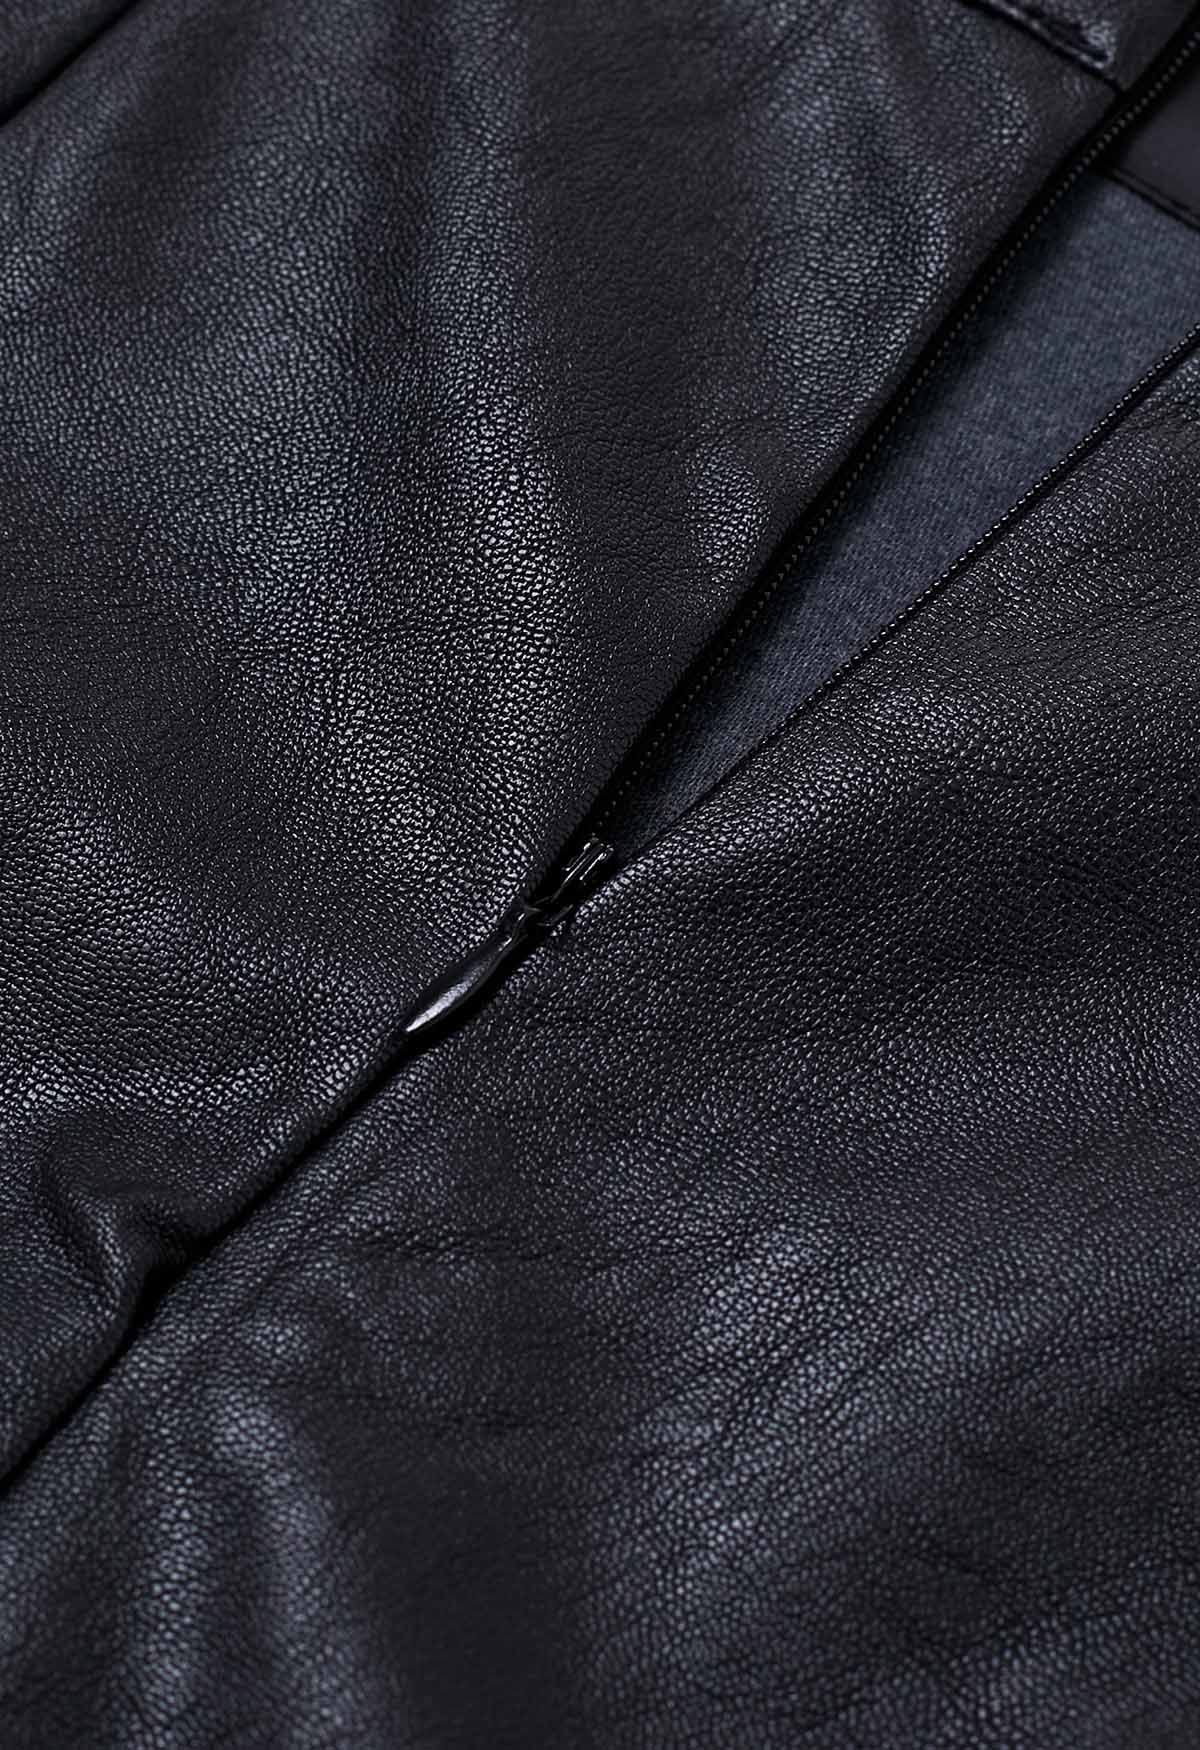 Minifalda de piel sintética con dobladillo irregular en negro